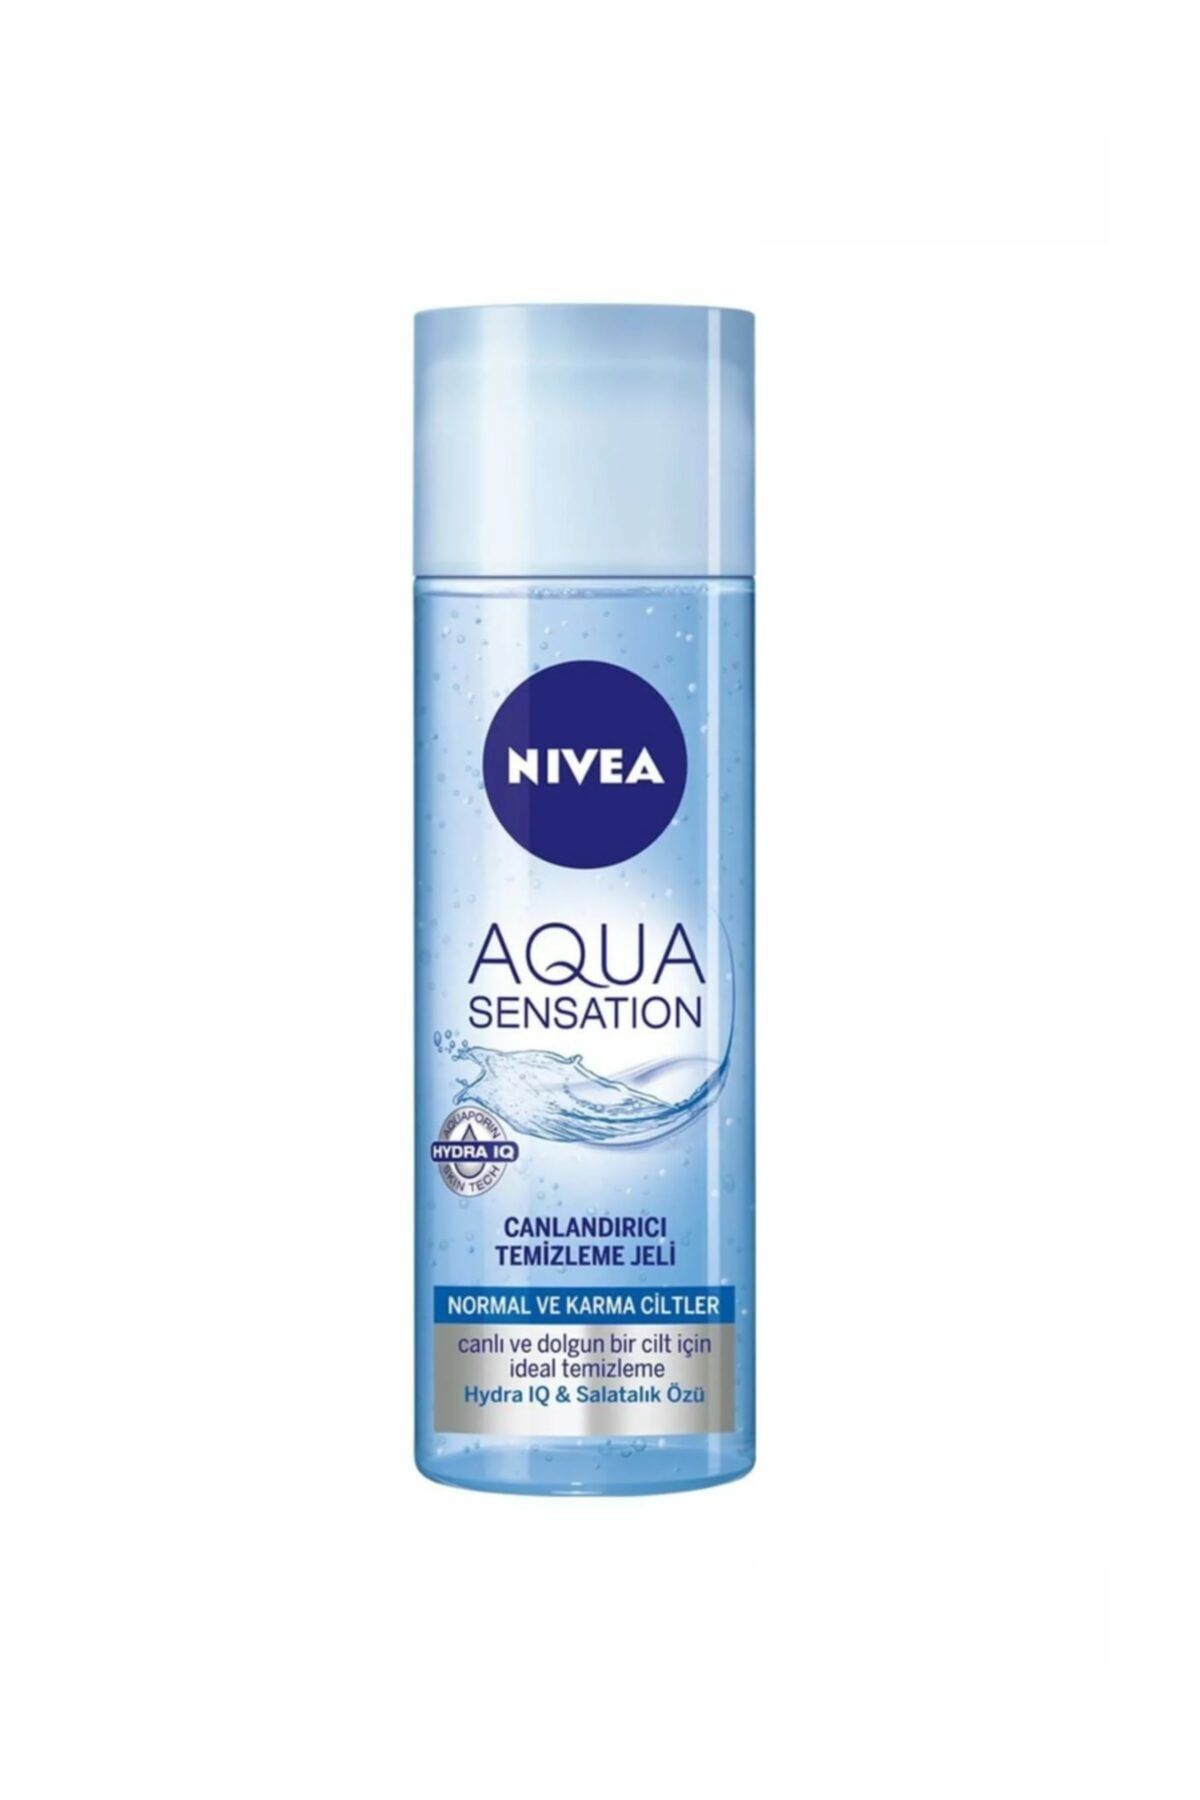 NIVEA Aqua Sensatıon Canlandırıcı Yüz Temizleme Jeli 200 Ml 4005808149261